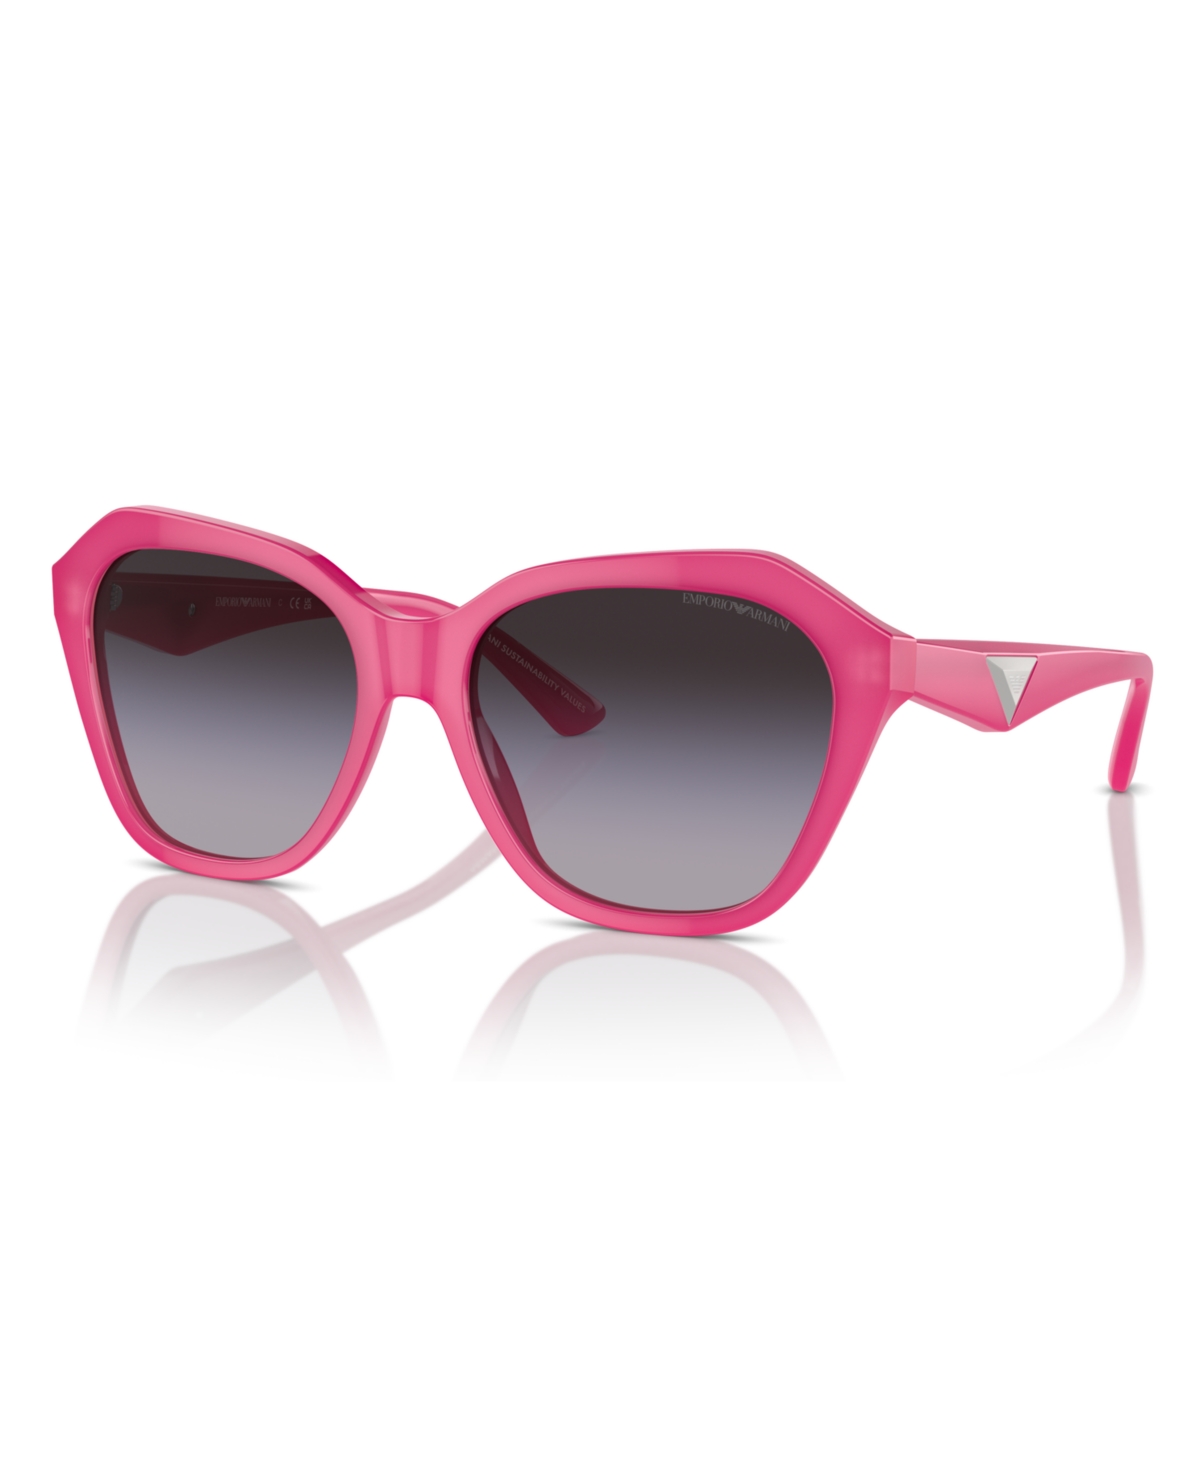 Emporio Armani Women's Sunglasses, Ea4221 In Shiny Opaline Fuchsia